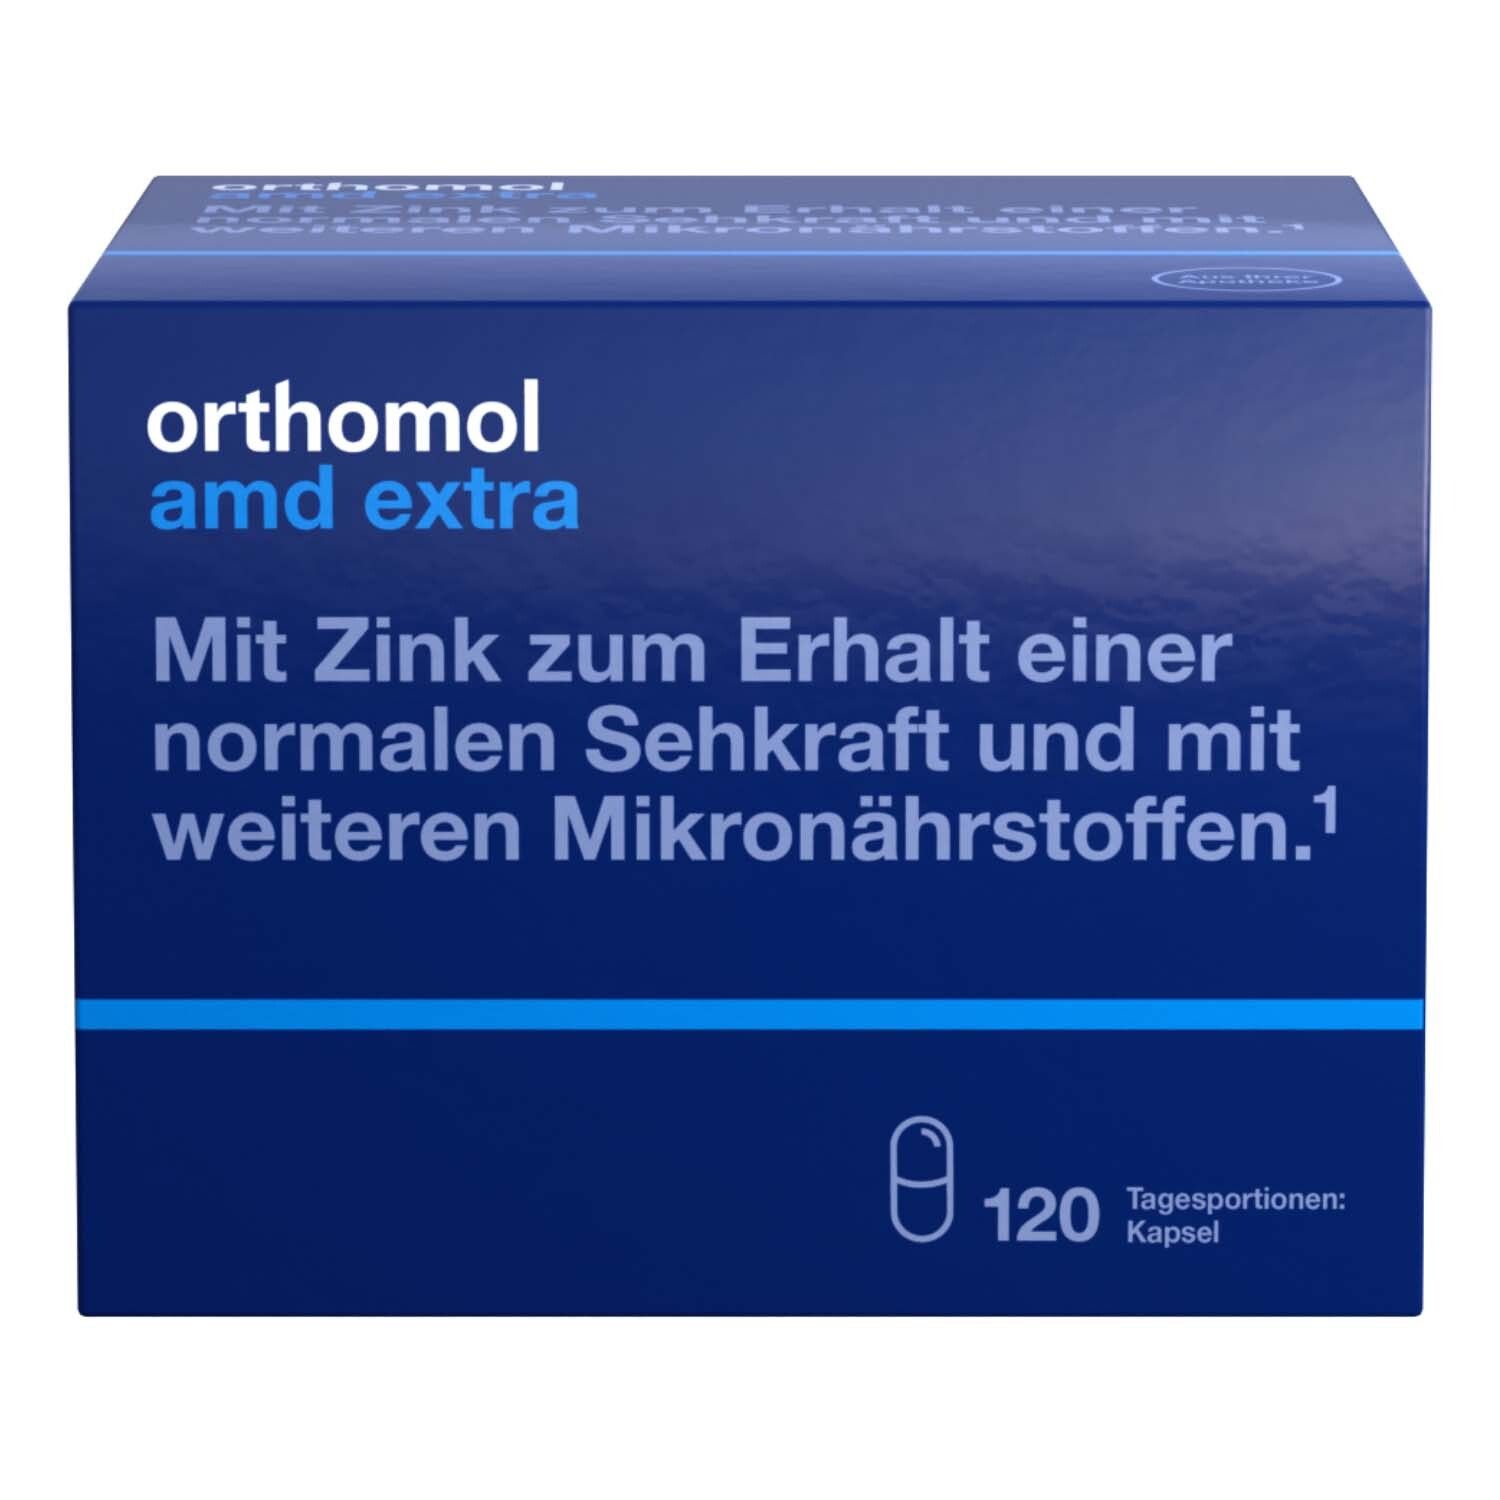 Orthomol AMD extra - Mikronährstoffe für den Erhalt normaler Sehkraft - mit Zink, Lutein und Zeaxanthin - Kapseln